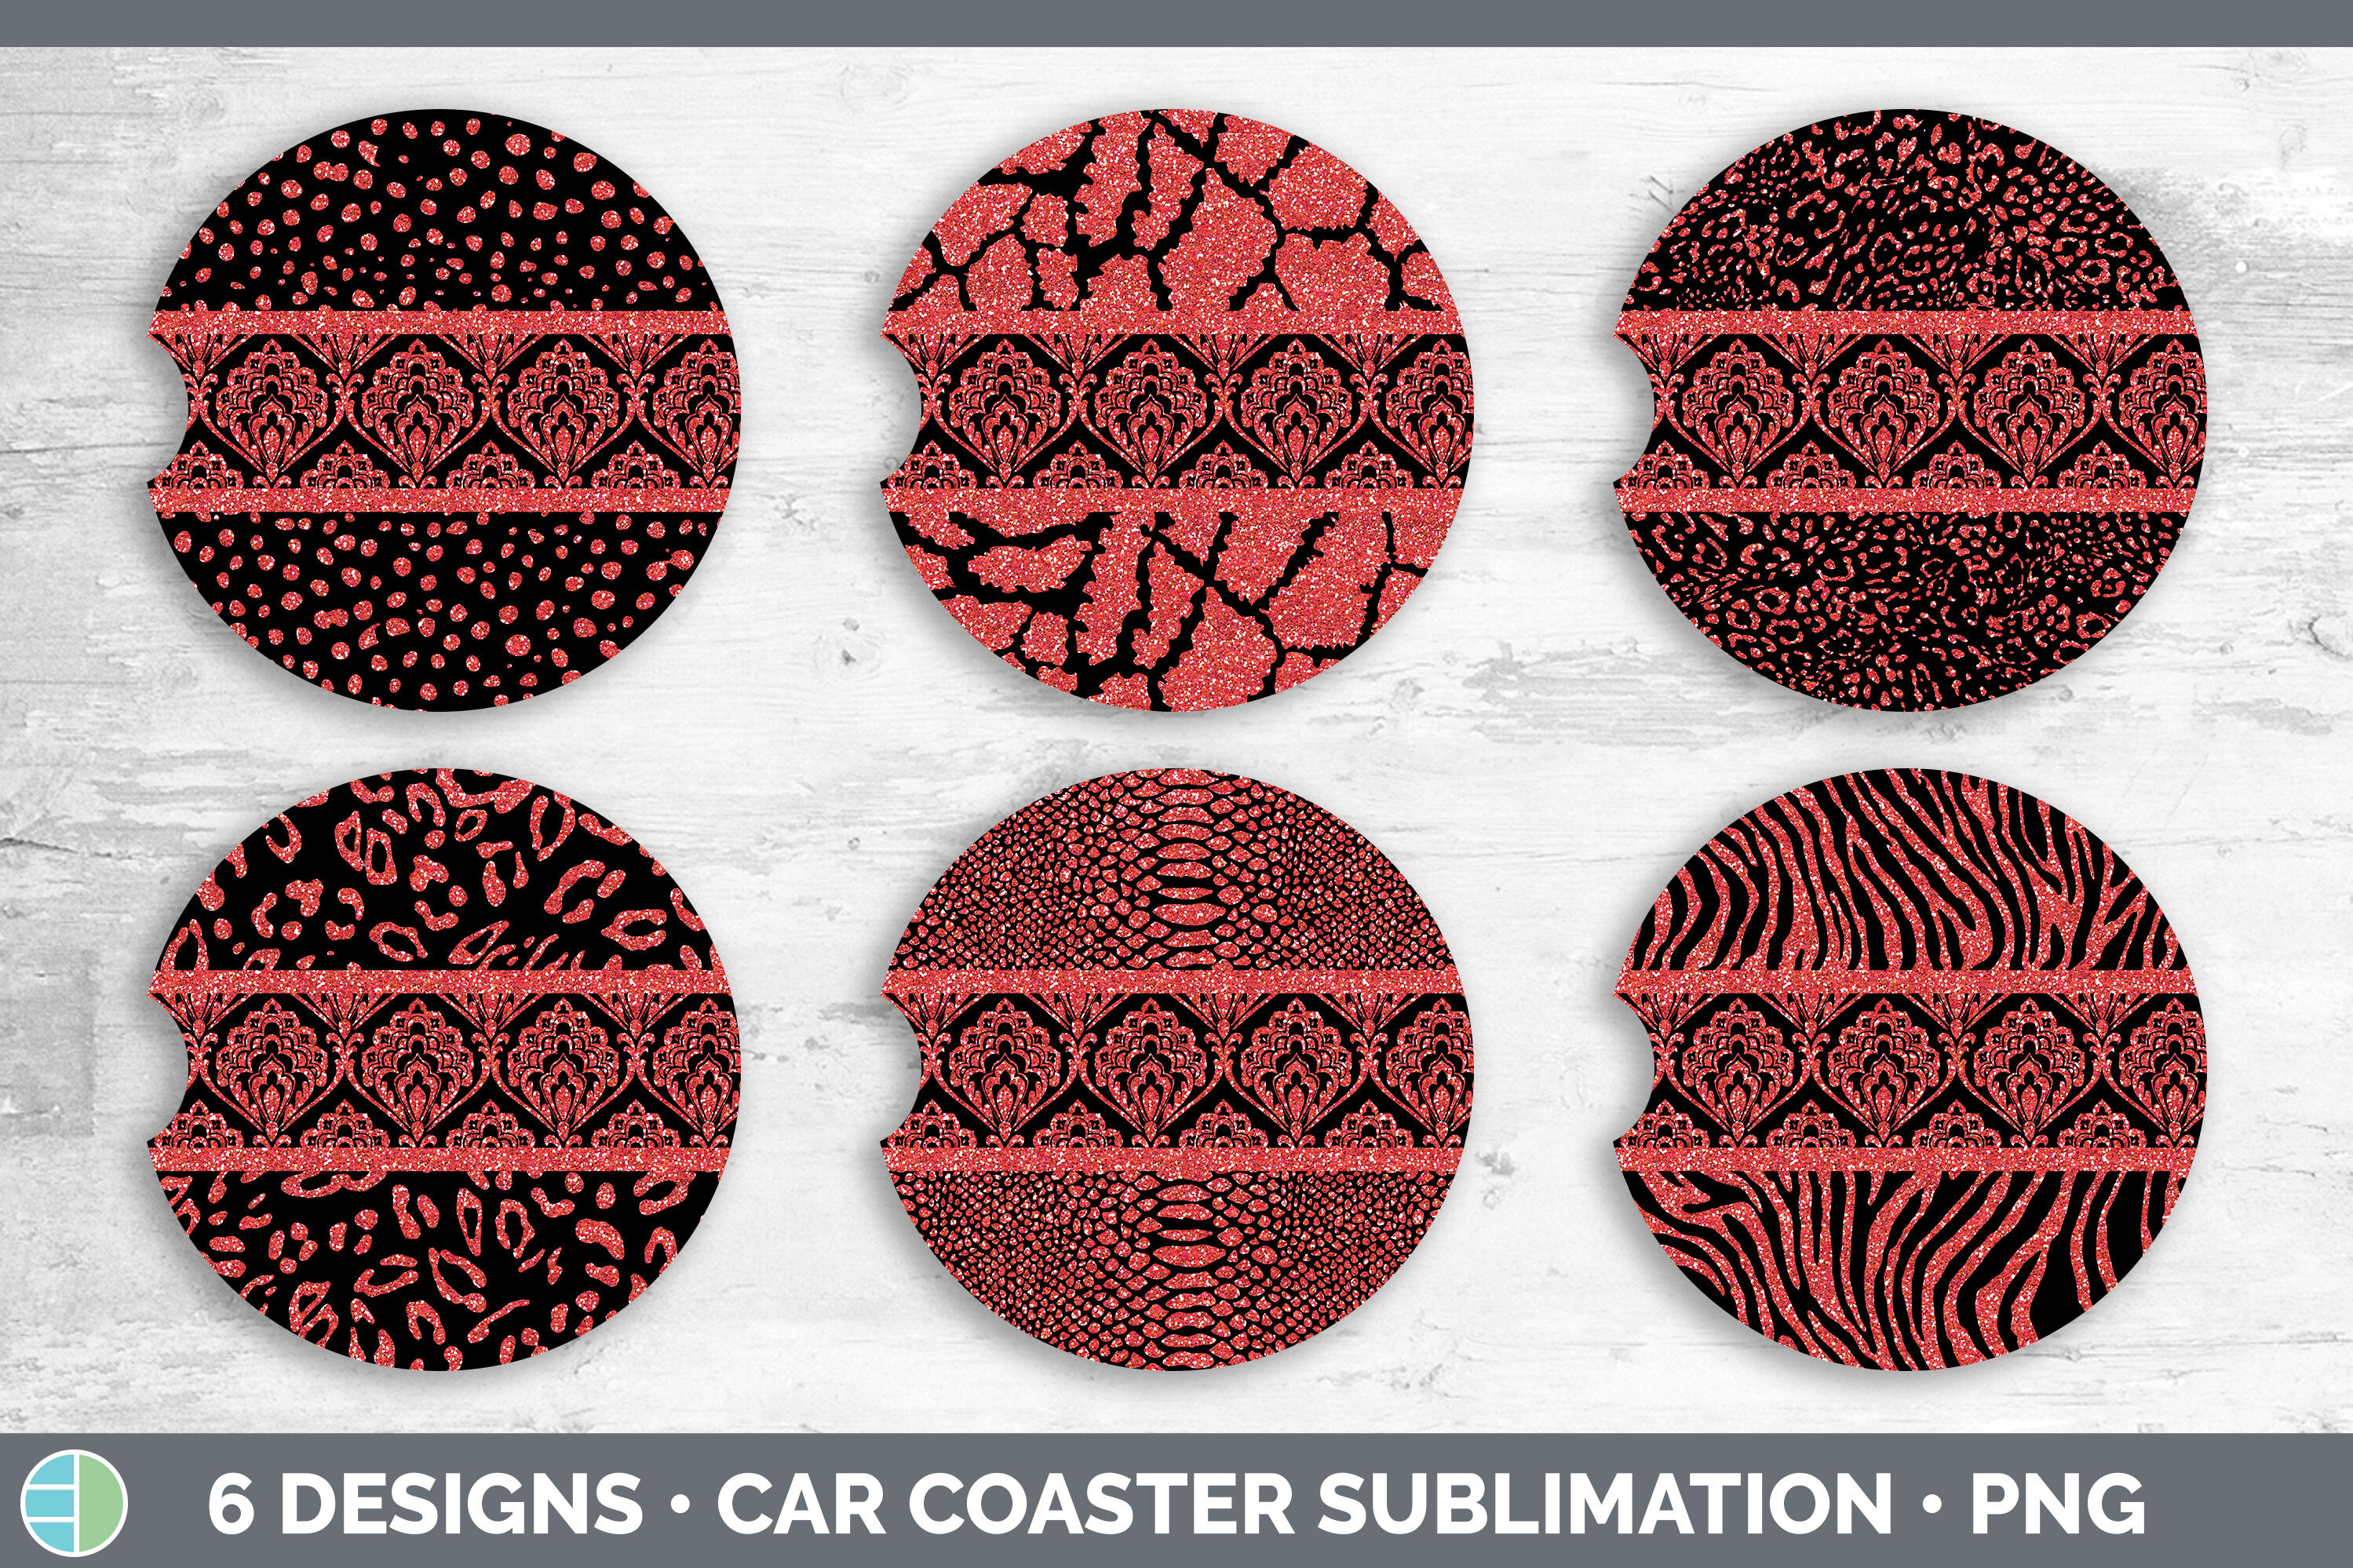 Leopard Print Sublimation Car Coasters